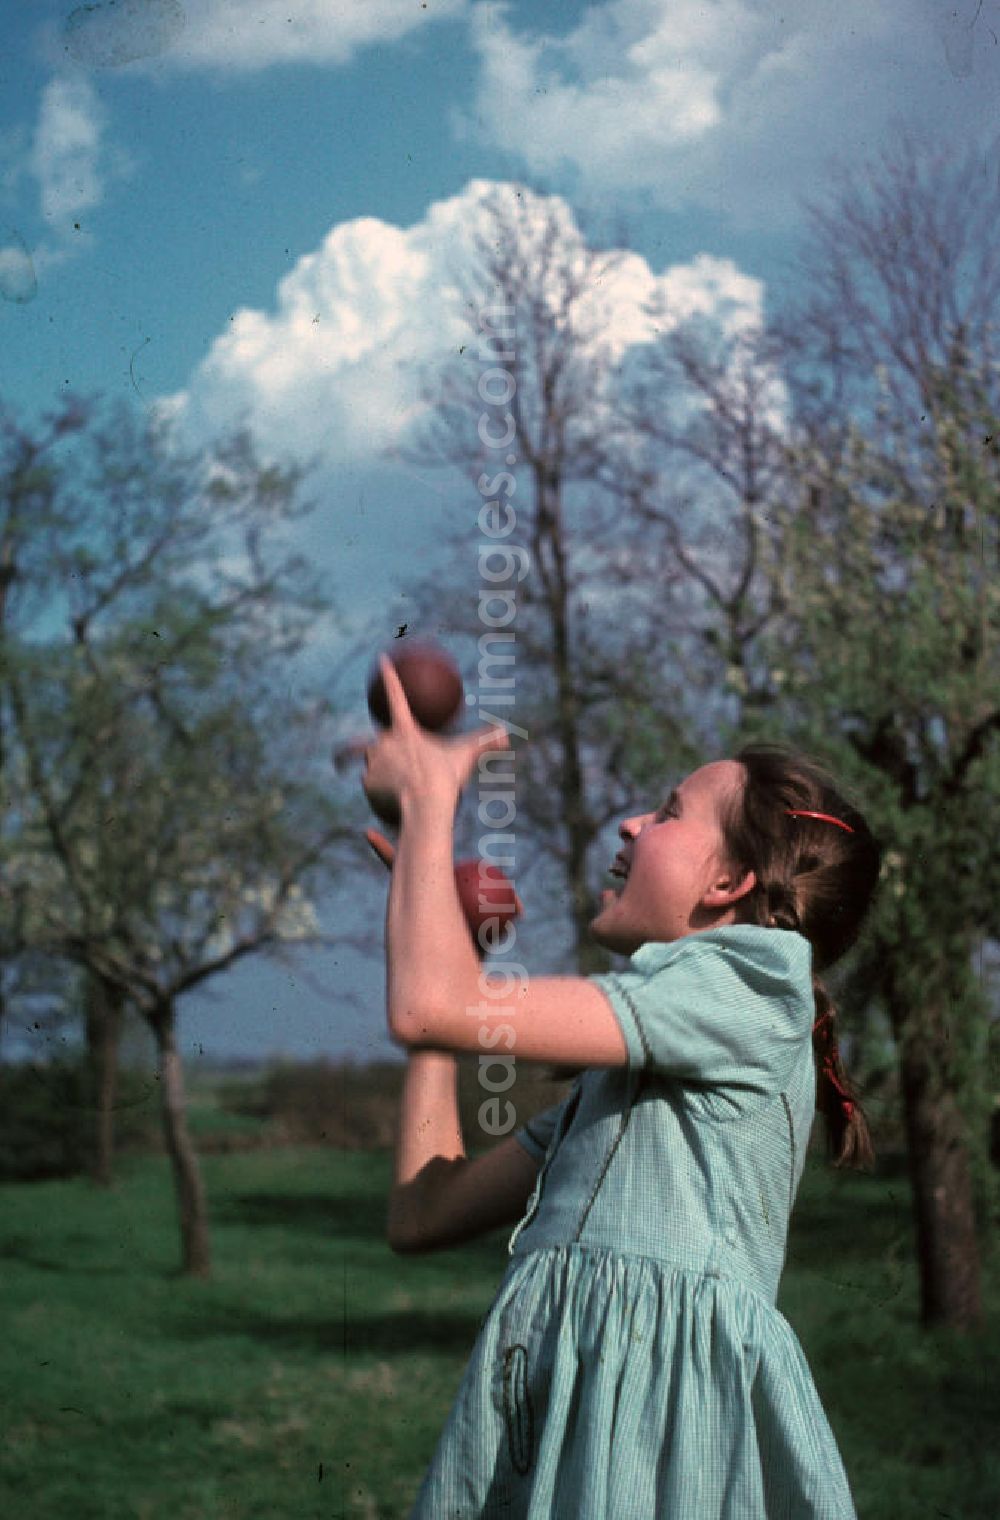 Bad Godesberg: Ein Mädchen jongliert mit drei Bällen in einem Park in Bad Godesberg. A girl juggling with three balls in a park in Bad Godesberg.